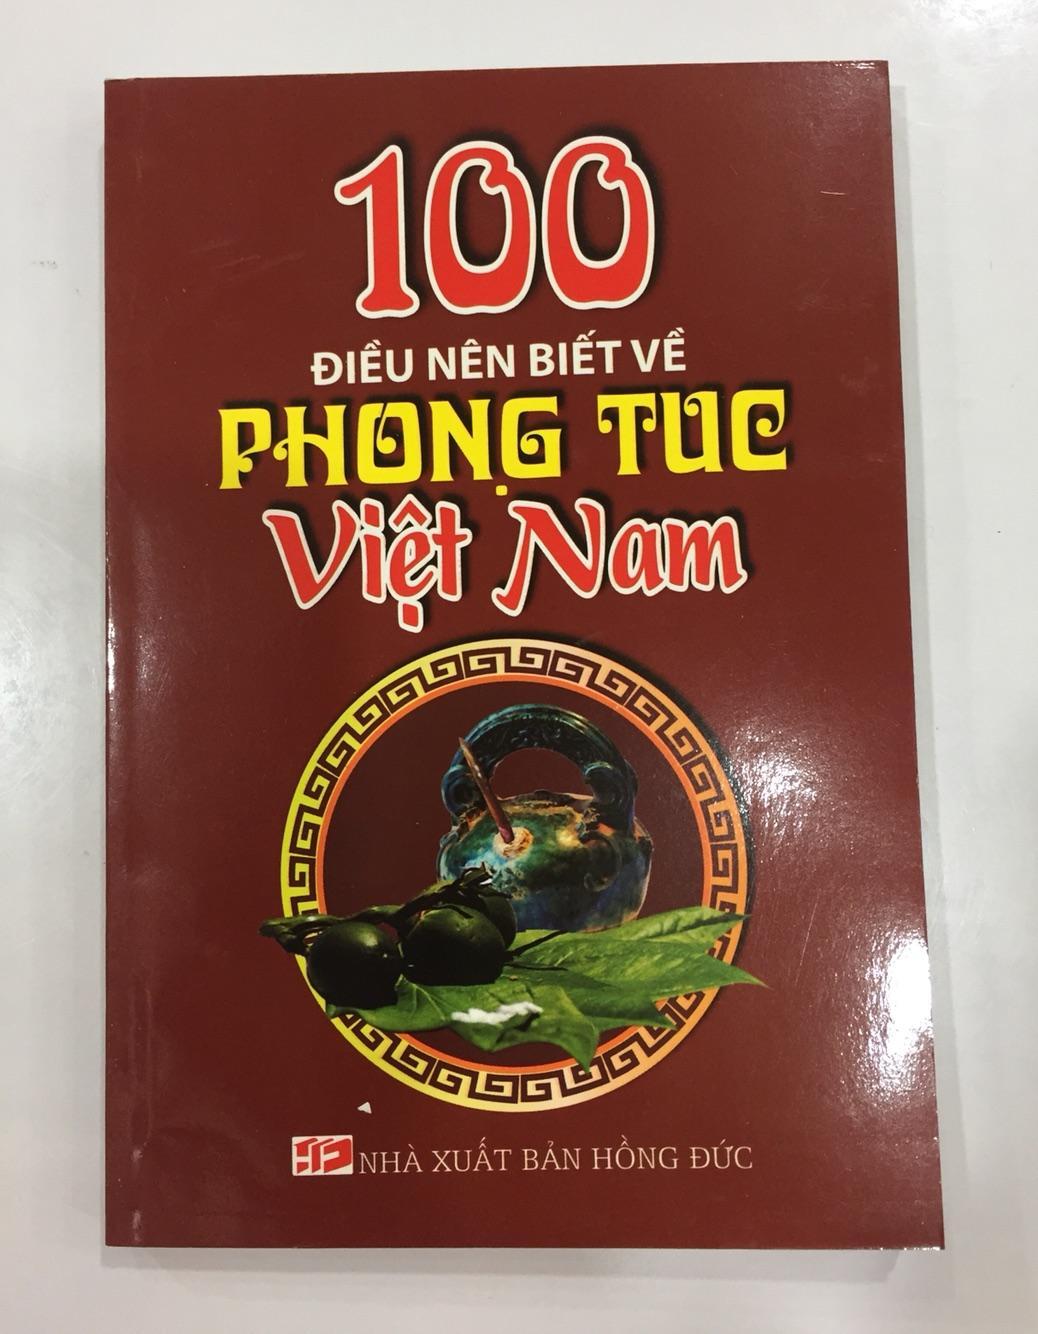 100 Điều nên biết về phong tục Việt Nam - Minh Đường